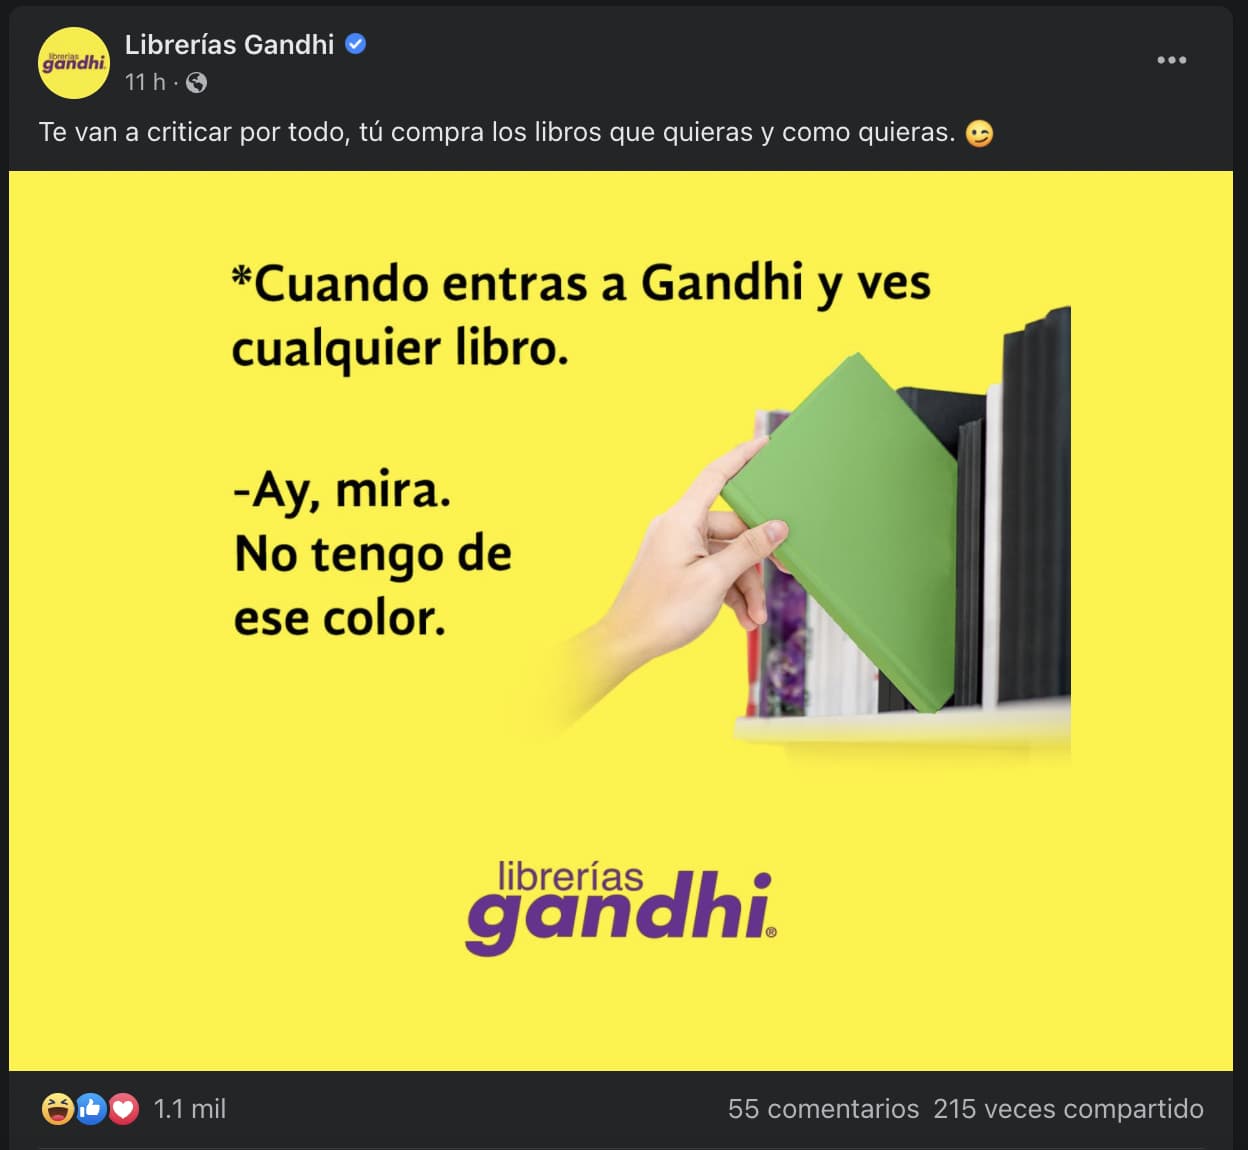 Ejemplo de meme marketing: Librerías Gandhi